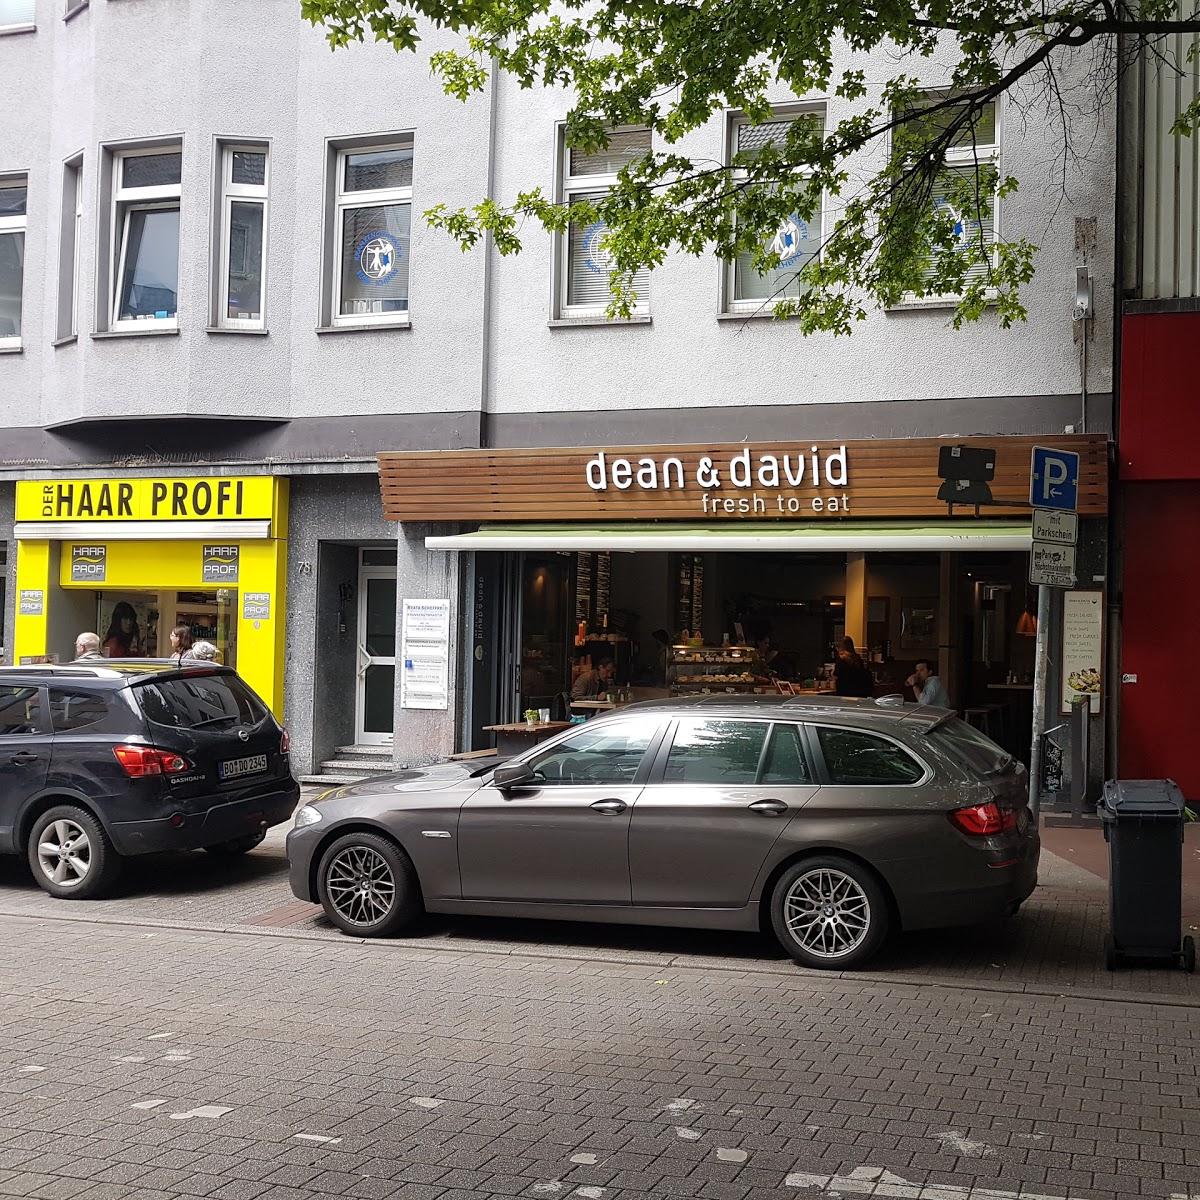 Restaurant "dean&david" in Essen